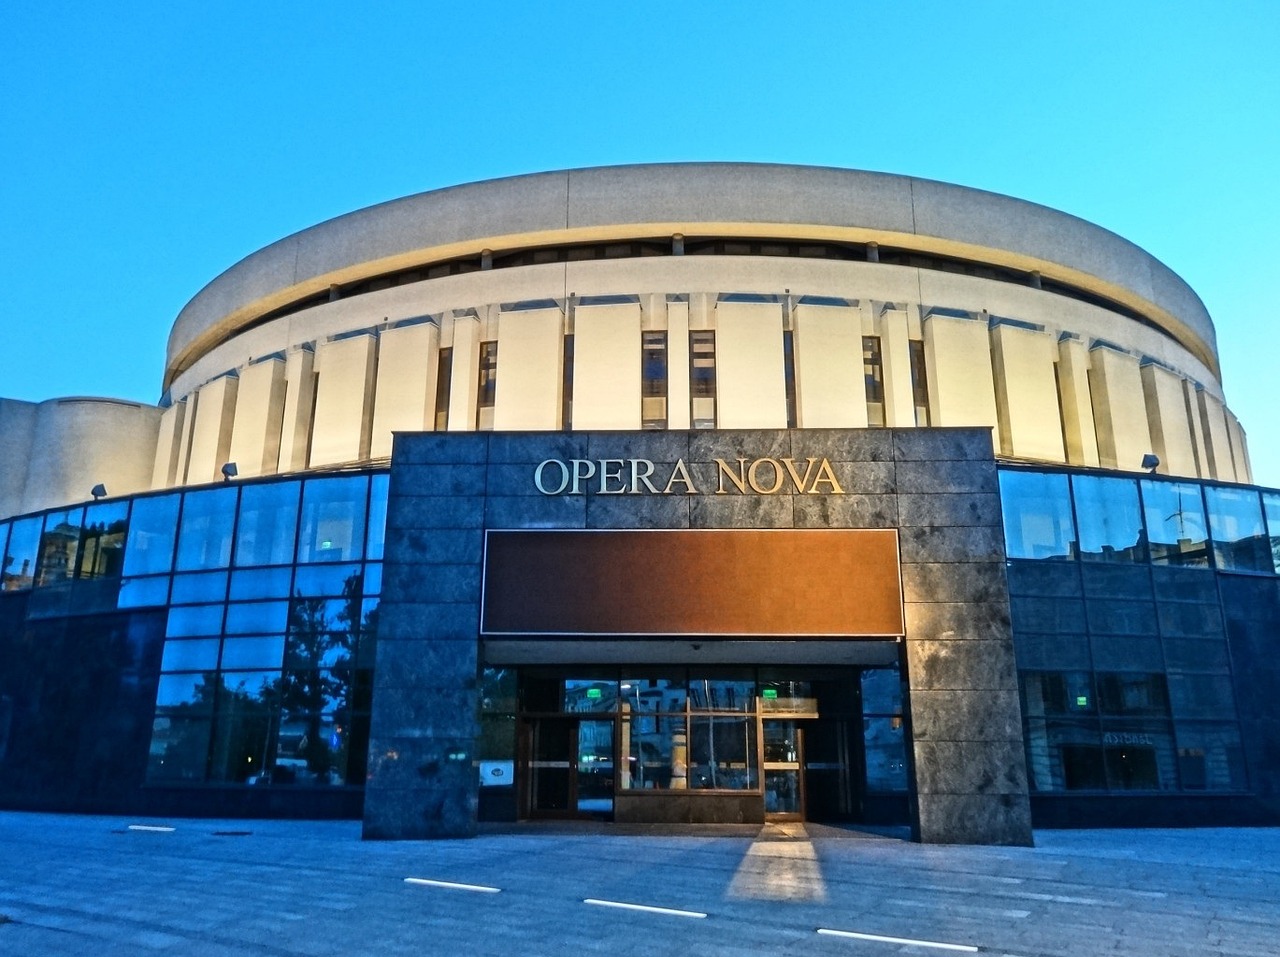 Okrągły budynek Opery Nova w Bydgoszczy, jako jednego z miejsc kultury